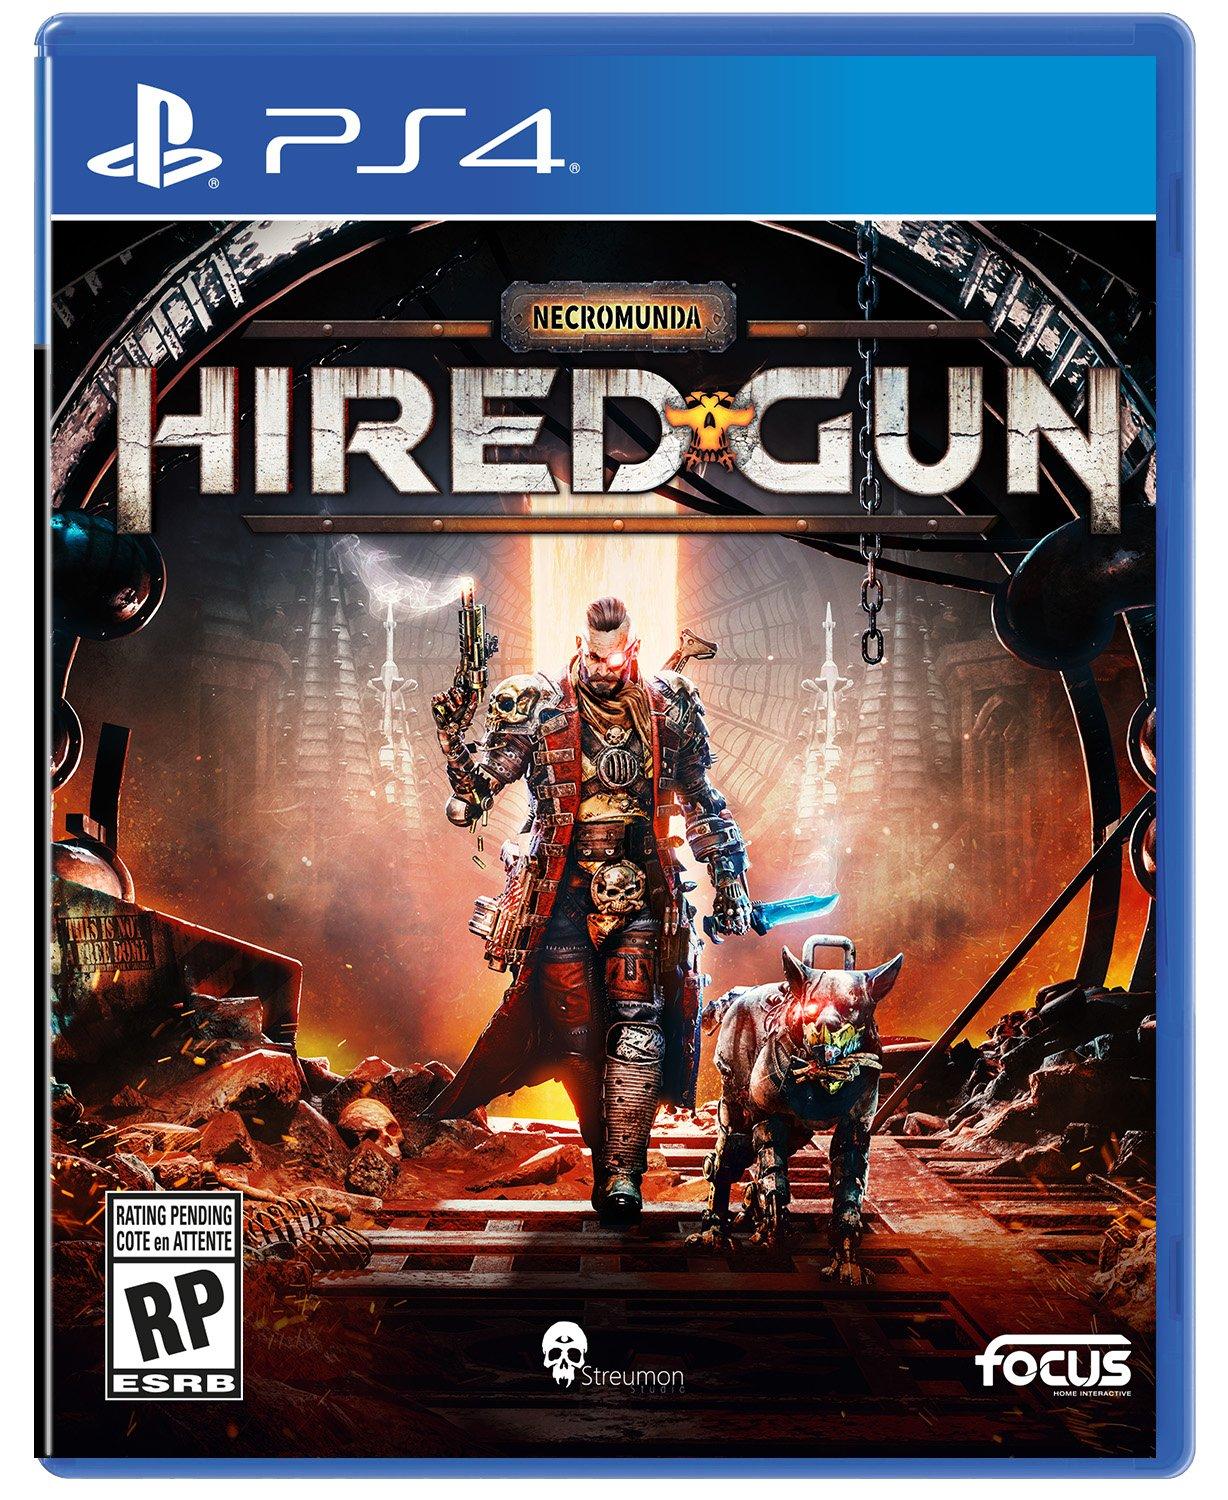 Necromunda: Gun GameStop Exclusive - PlayStation 4 | PlayStation 4 | GameStop